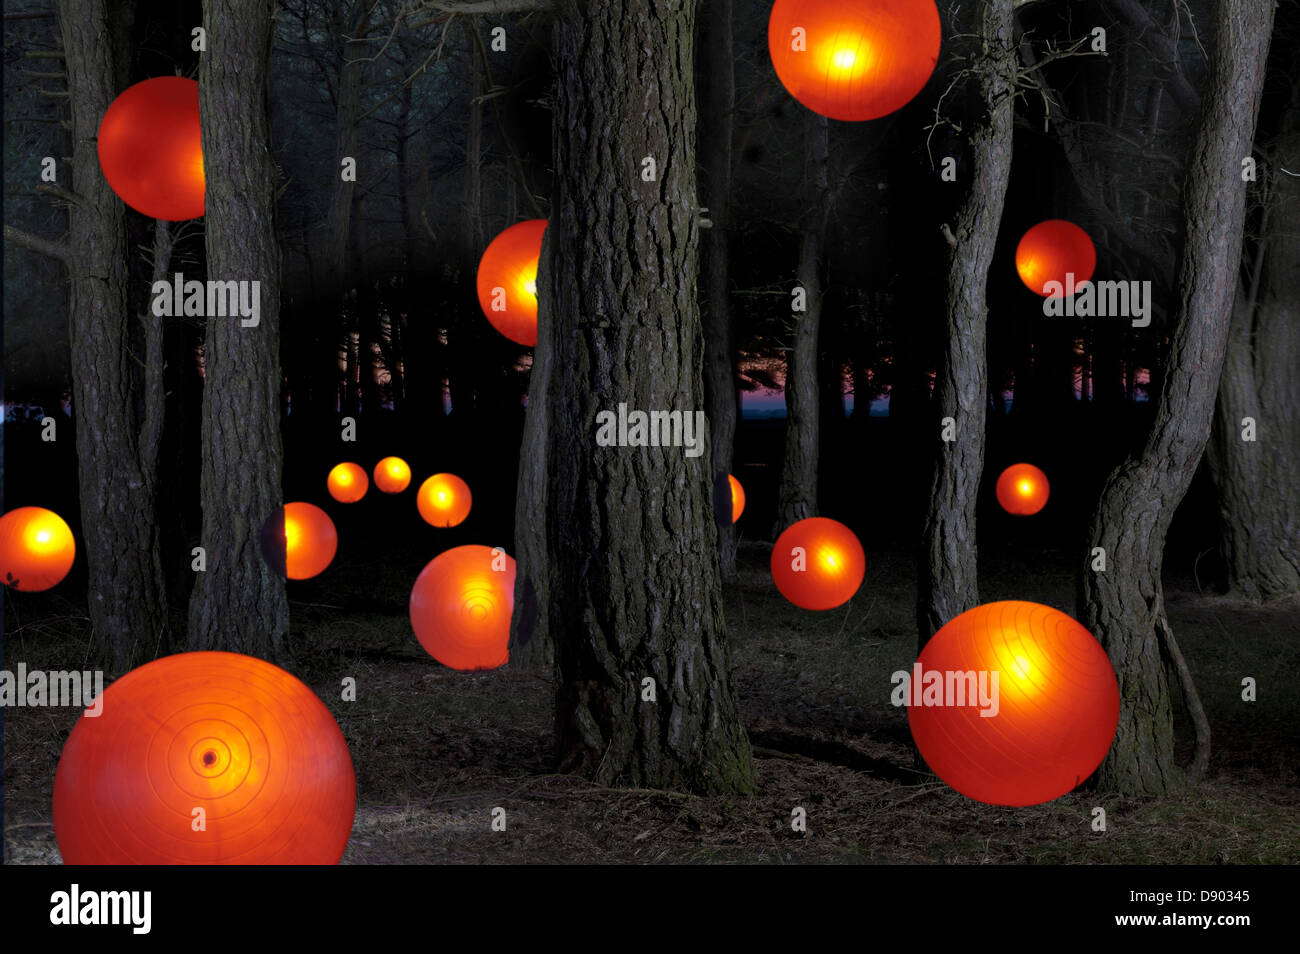 Las bolas de color naranja brillante por árboles en el bosque, un místico abstracto concepto significativo Foto de stock